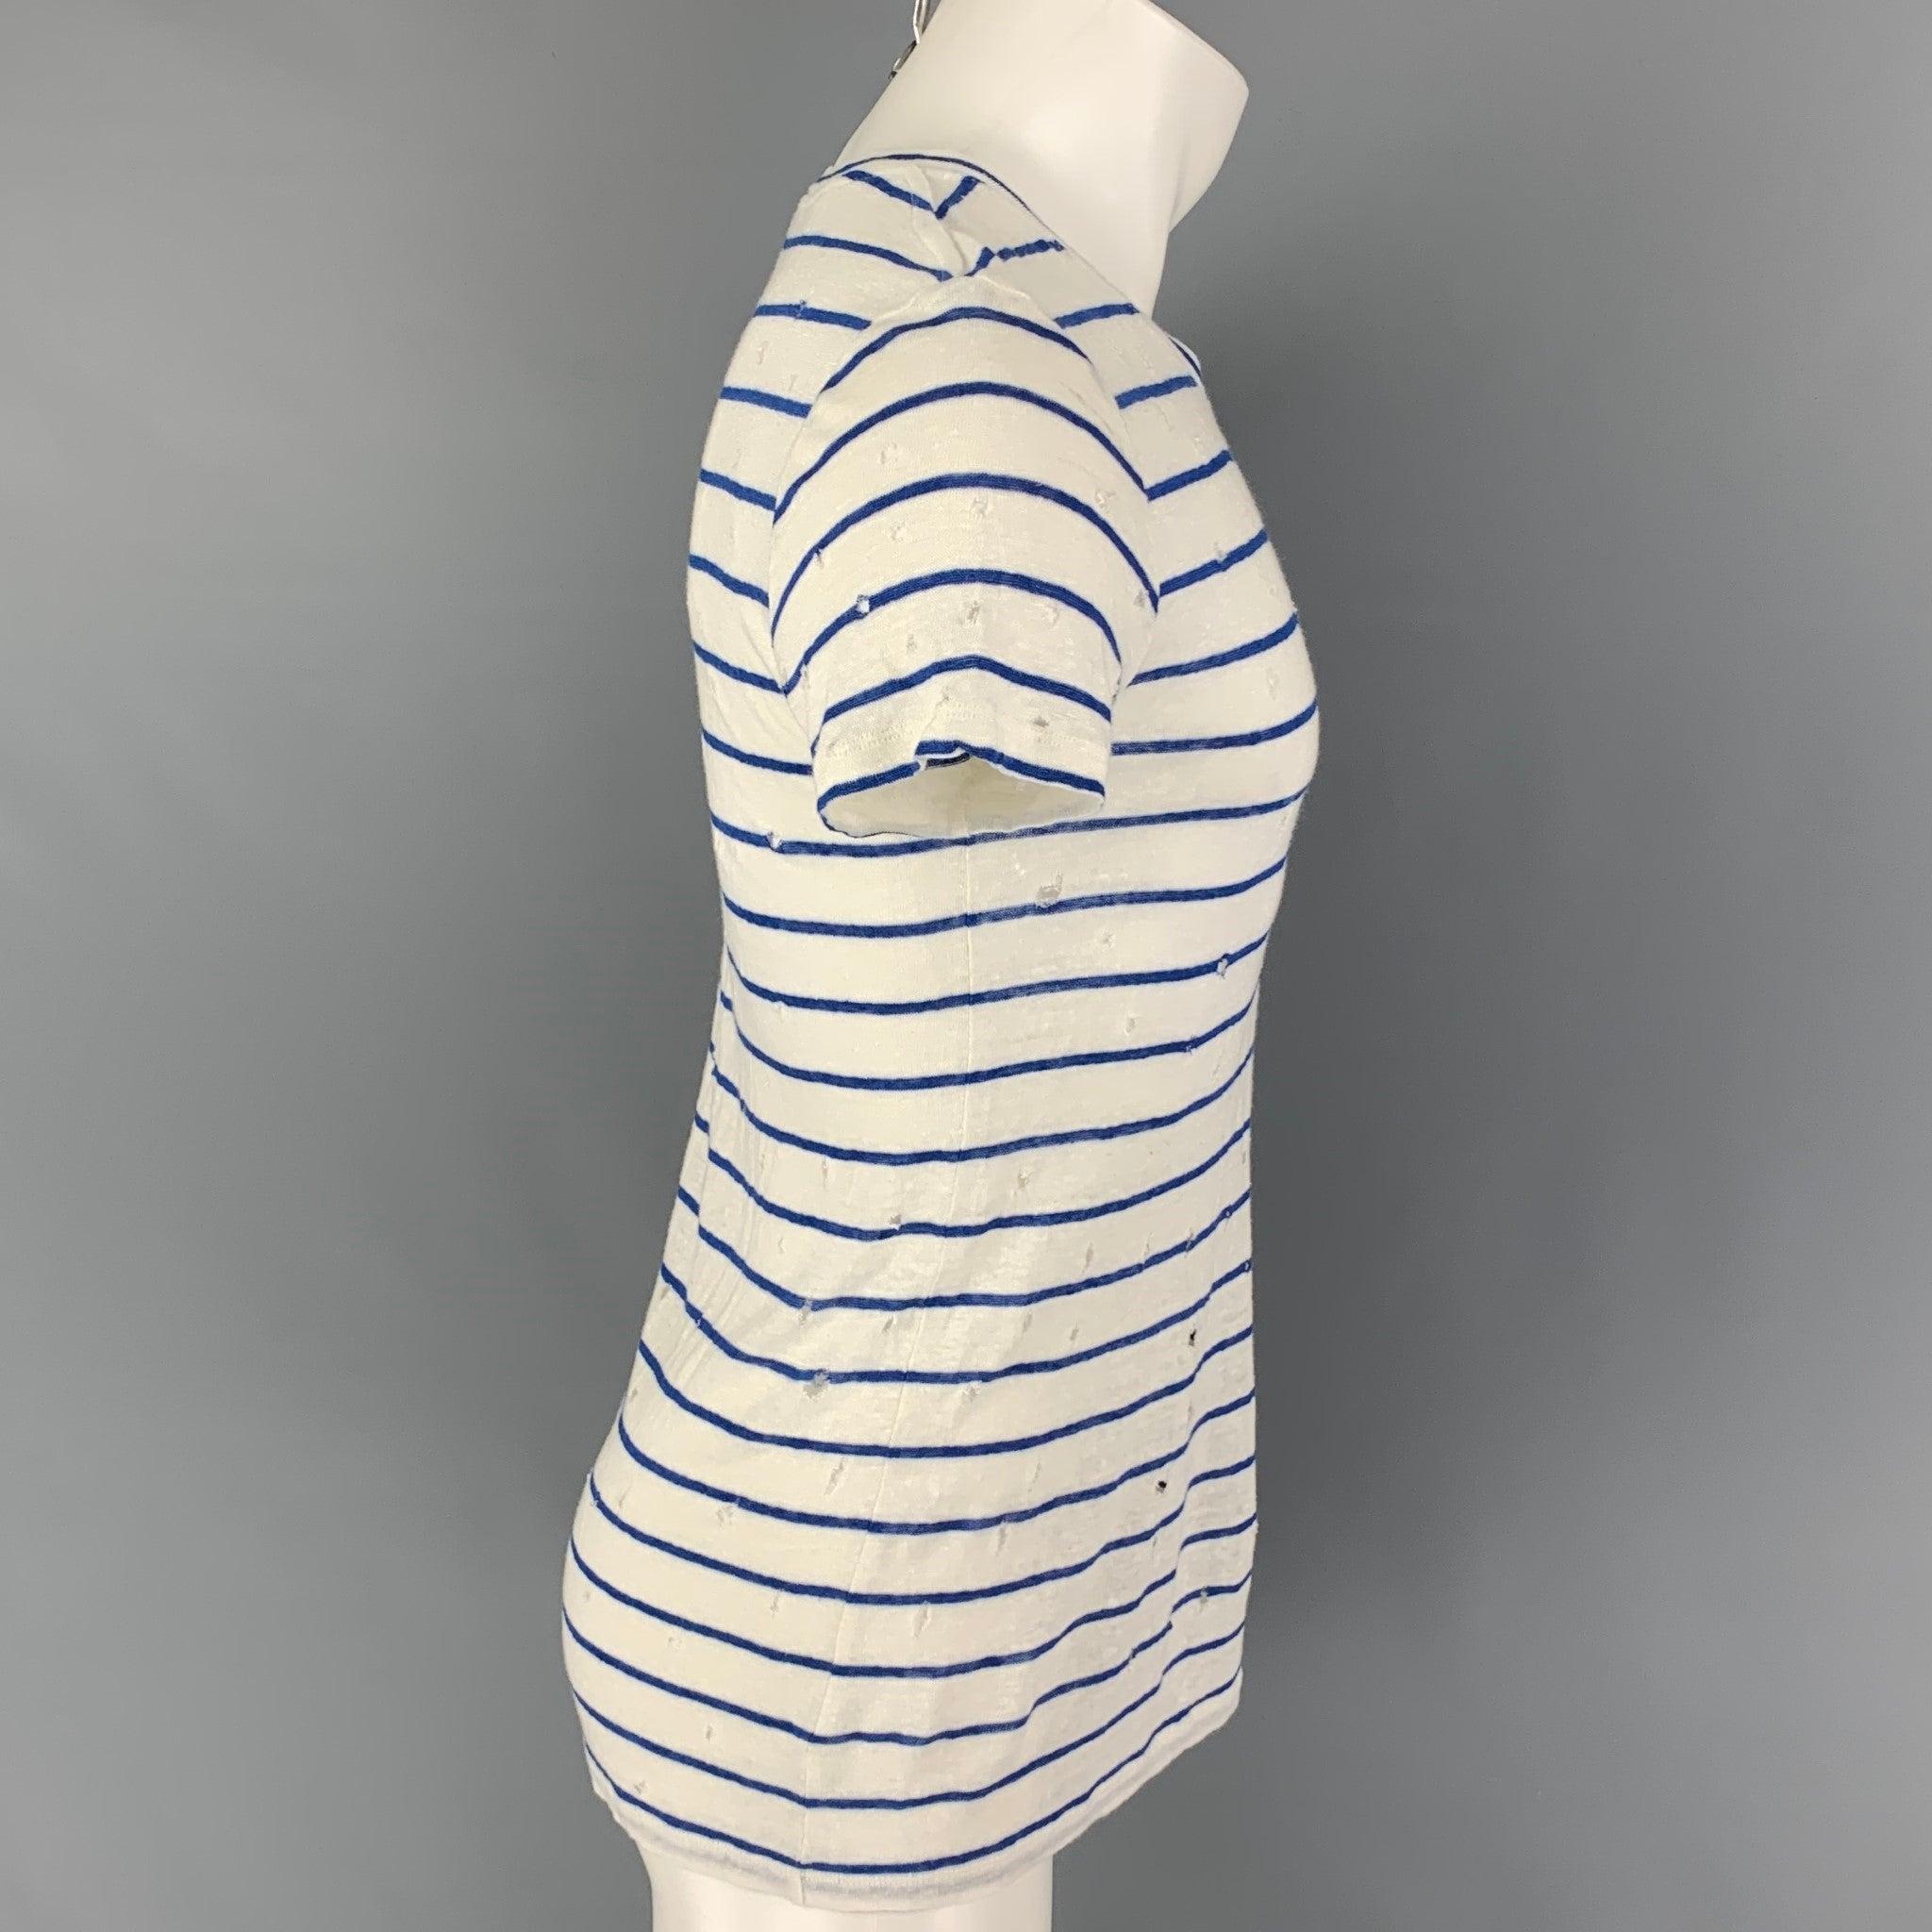 Le t-shirt 'Mina' d'IRO se décline en lin blanc et bleu, avec des détails en relief et une encolure ras-du-cou. Fabriqué au Portugal.
Bon
Etat d'occasion.
Légère marque sur le devant. Tel quel.  

Marqué :   XS 

Mesures : 
 
Épaule :
16,5 pouces 